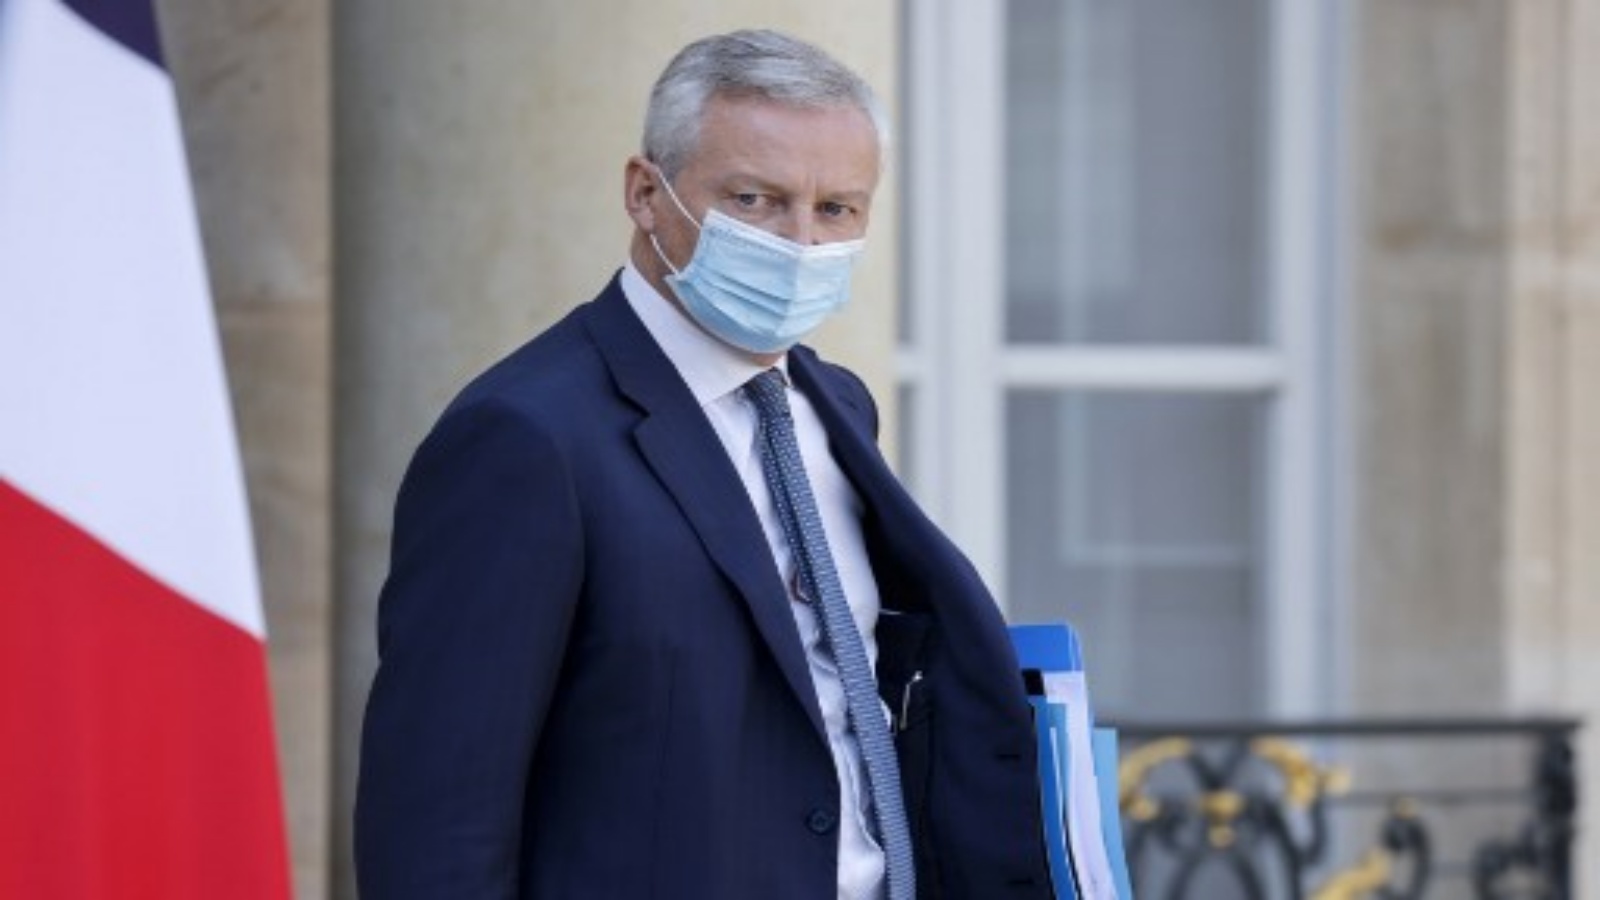 وزير الاقتصاد والمالية الفرنسي برونو لو مير ، مرتديًا قناع الوجه ، يغادر بعد الاجتماع الأسبوعي لمجلس الوزراء في قصر الإليزيه في باريس ، في 16 سبتمبر 2020. 